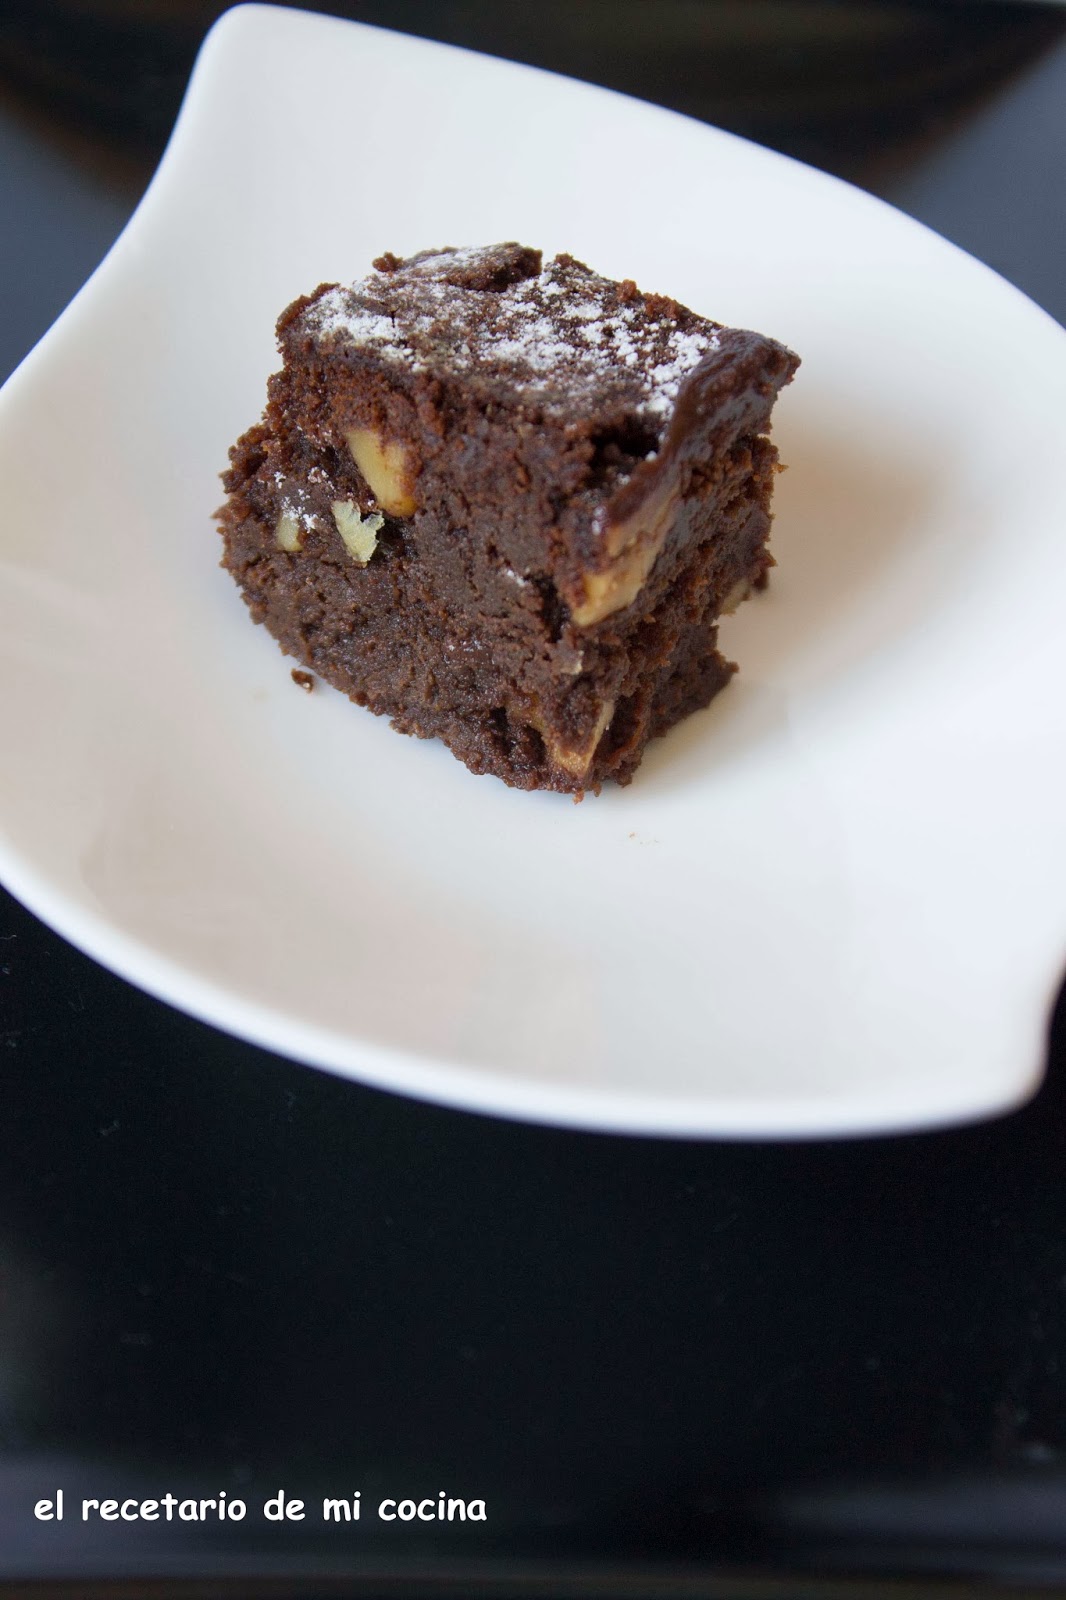 el recetario de mi cocina: Brownie